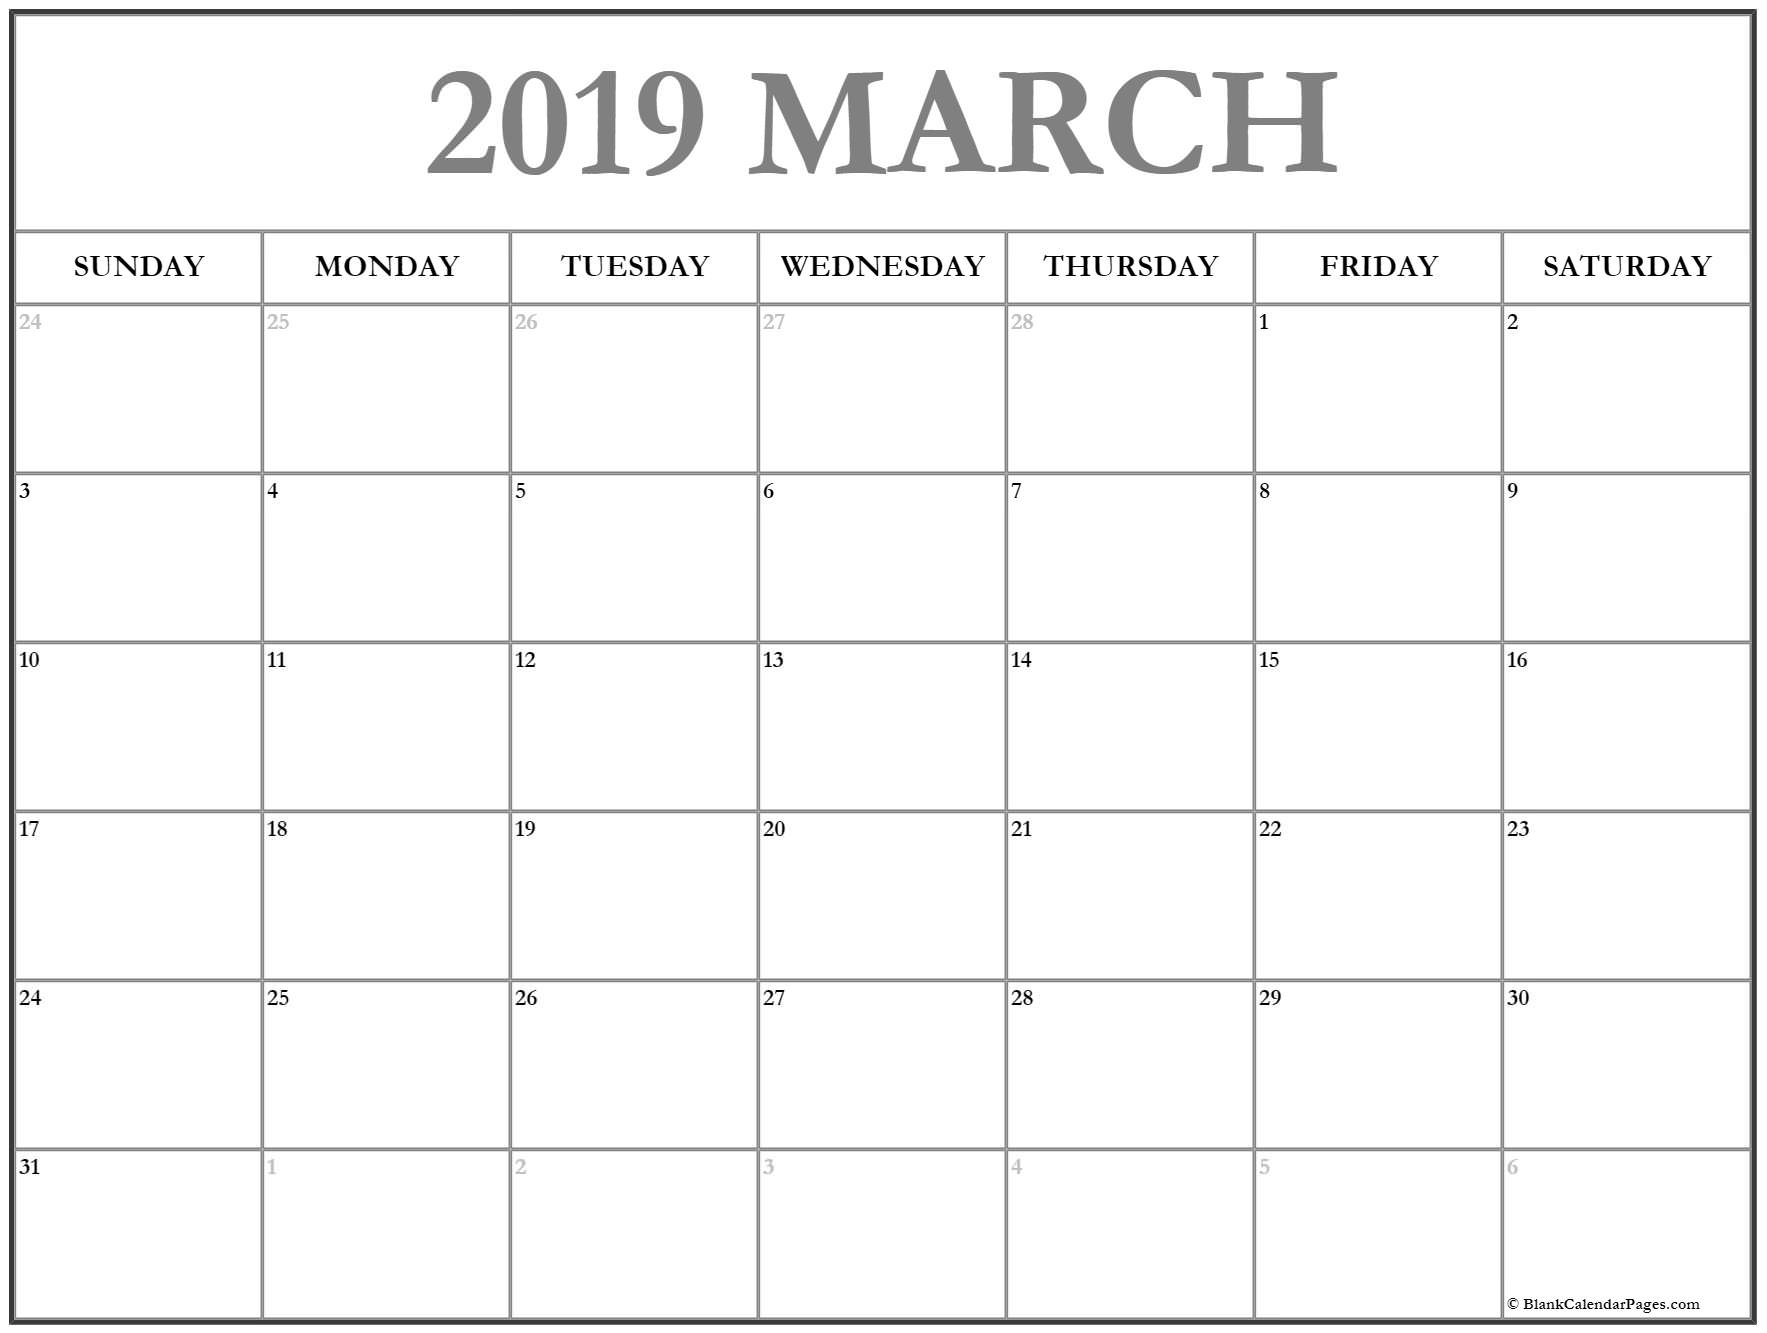 2019 March Calendar Template